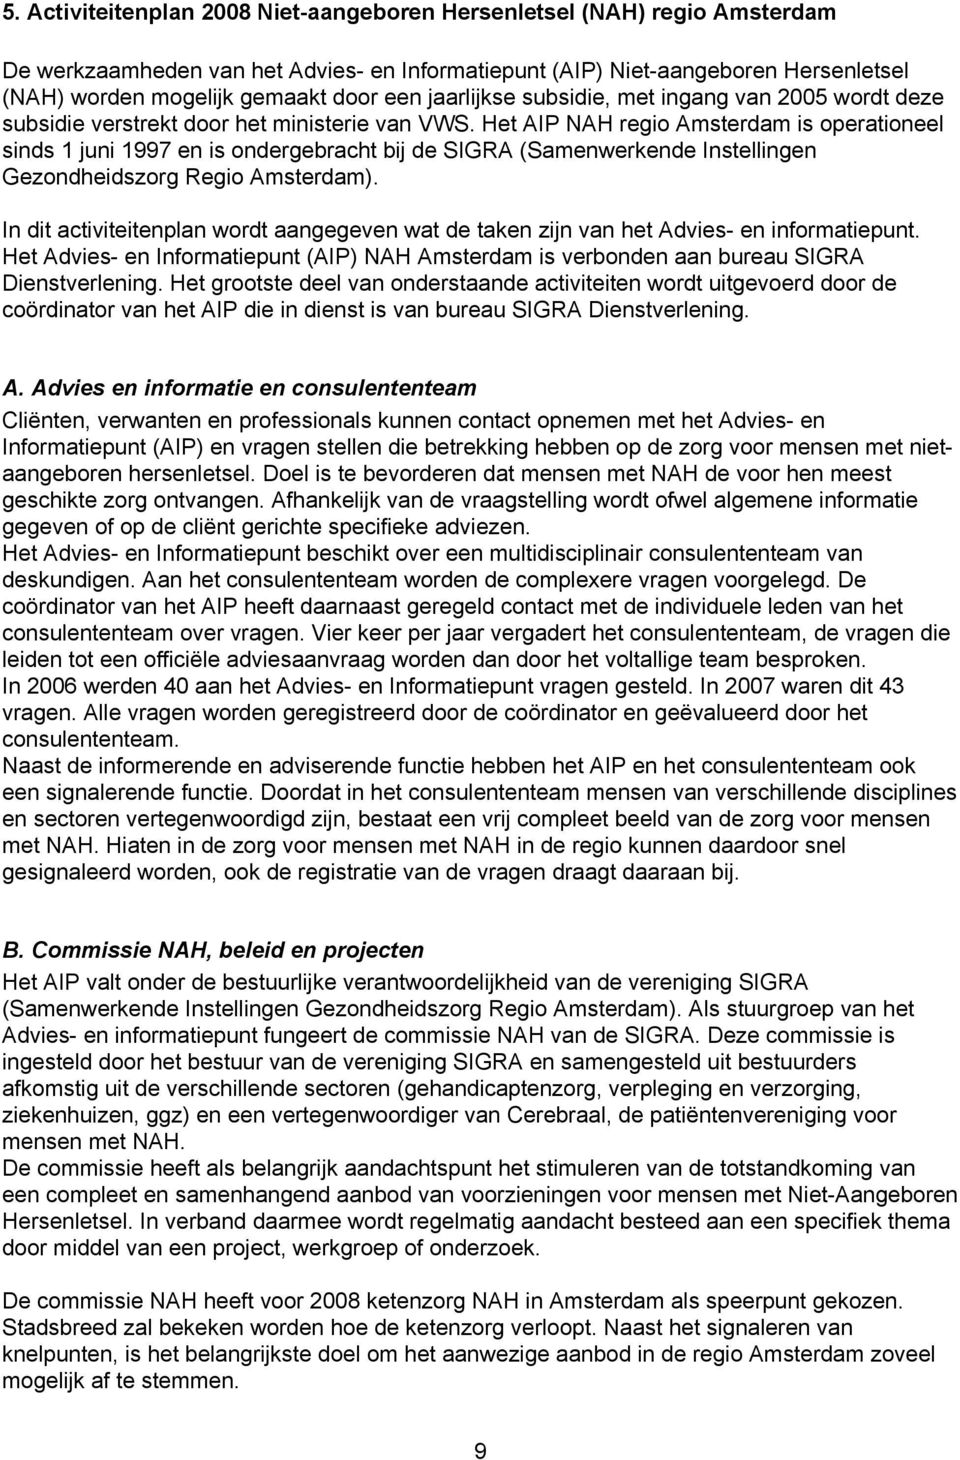 Het AIP NAH regio Amsterdam is operationeel sinds 1 juni 1997 en is ondergebracht bij de SIGRA (Samenwerkende Instellingen Gezondheidszorg Regio Amsterdam).